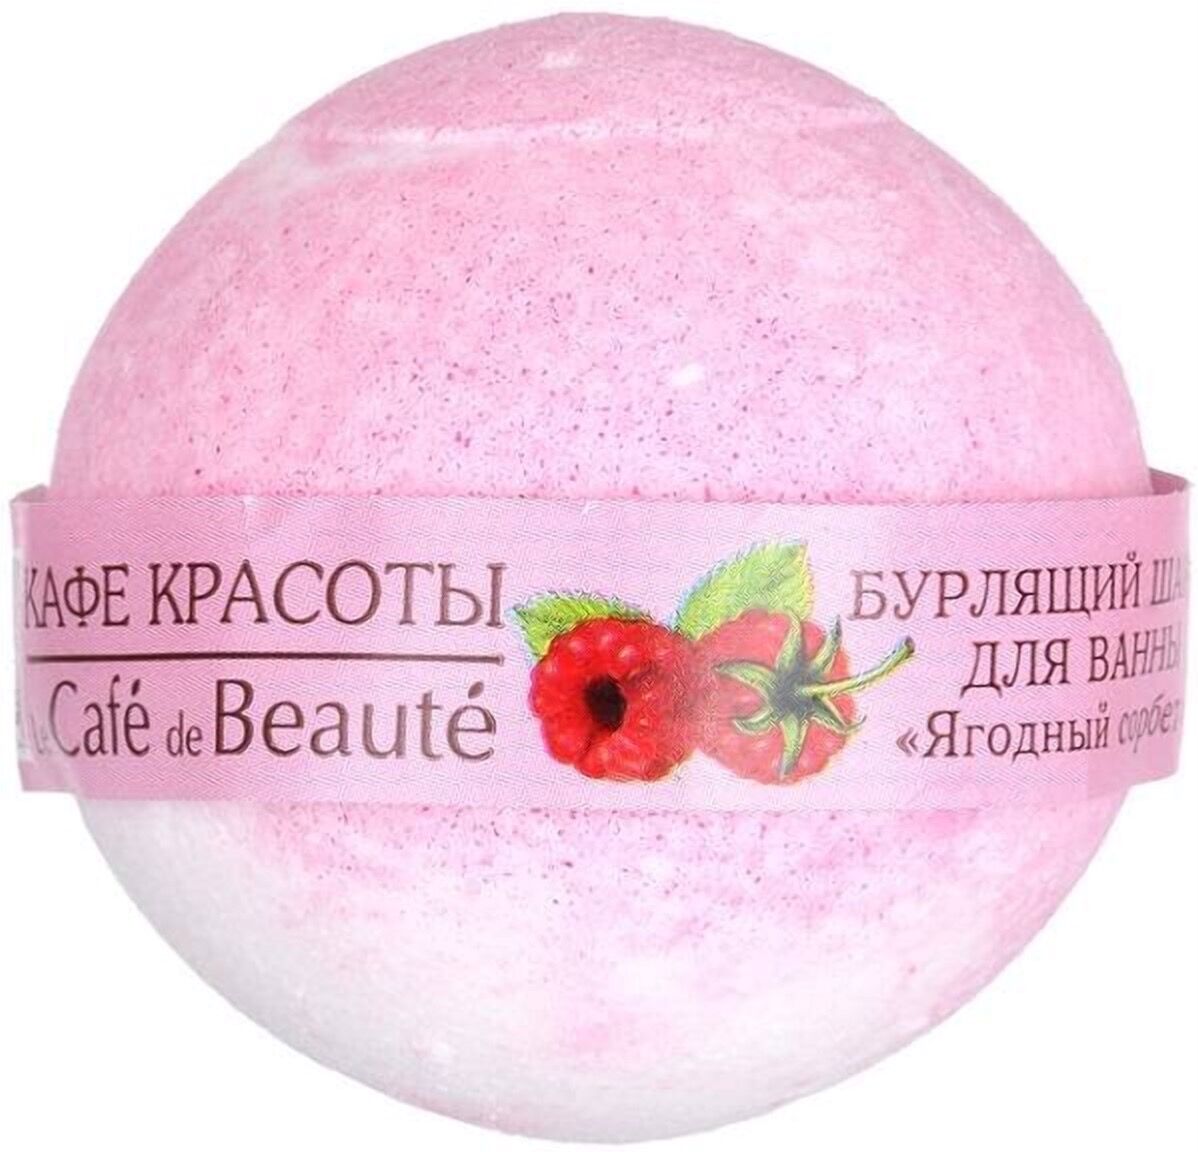 Бурлящий шарик для ванны "Ягодный сорбет"  КАФЕ КРАСОТЫ